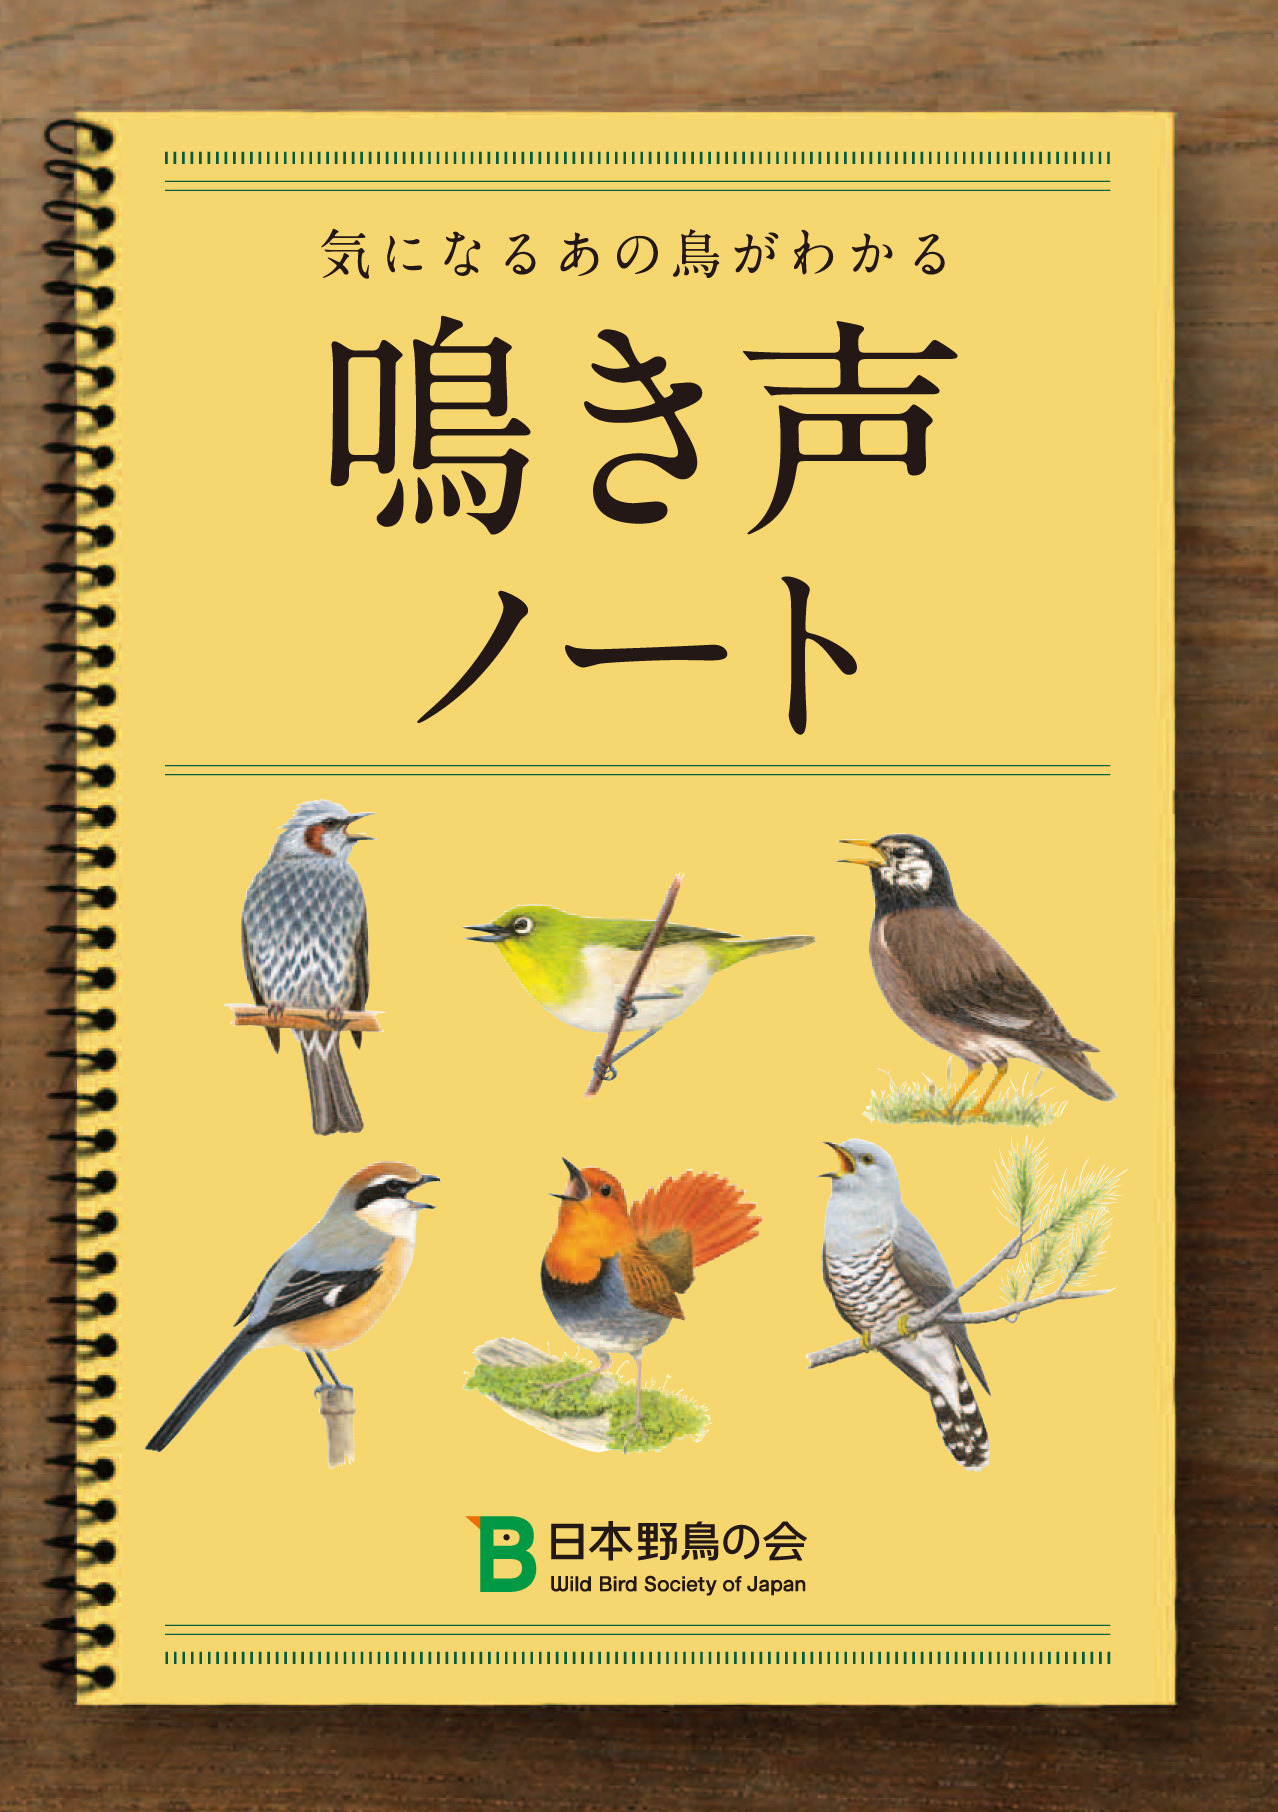 日本野鳥の会 気になる鳥がわかる 鳴き声ノート を無料配布 動物のリアルを伝えるwebメディア Reanimal